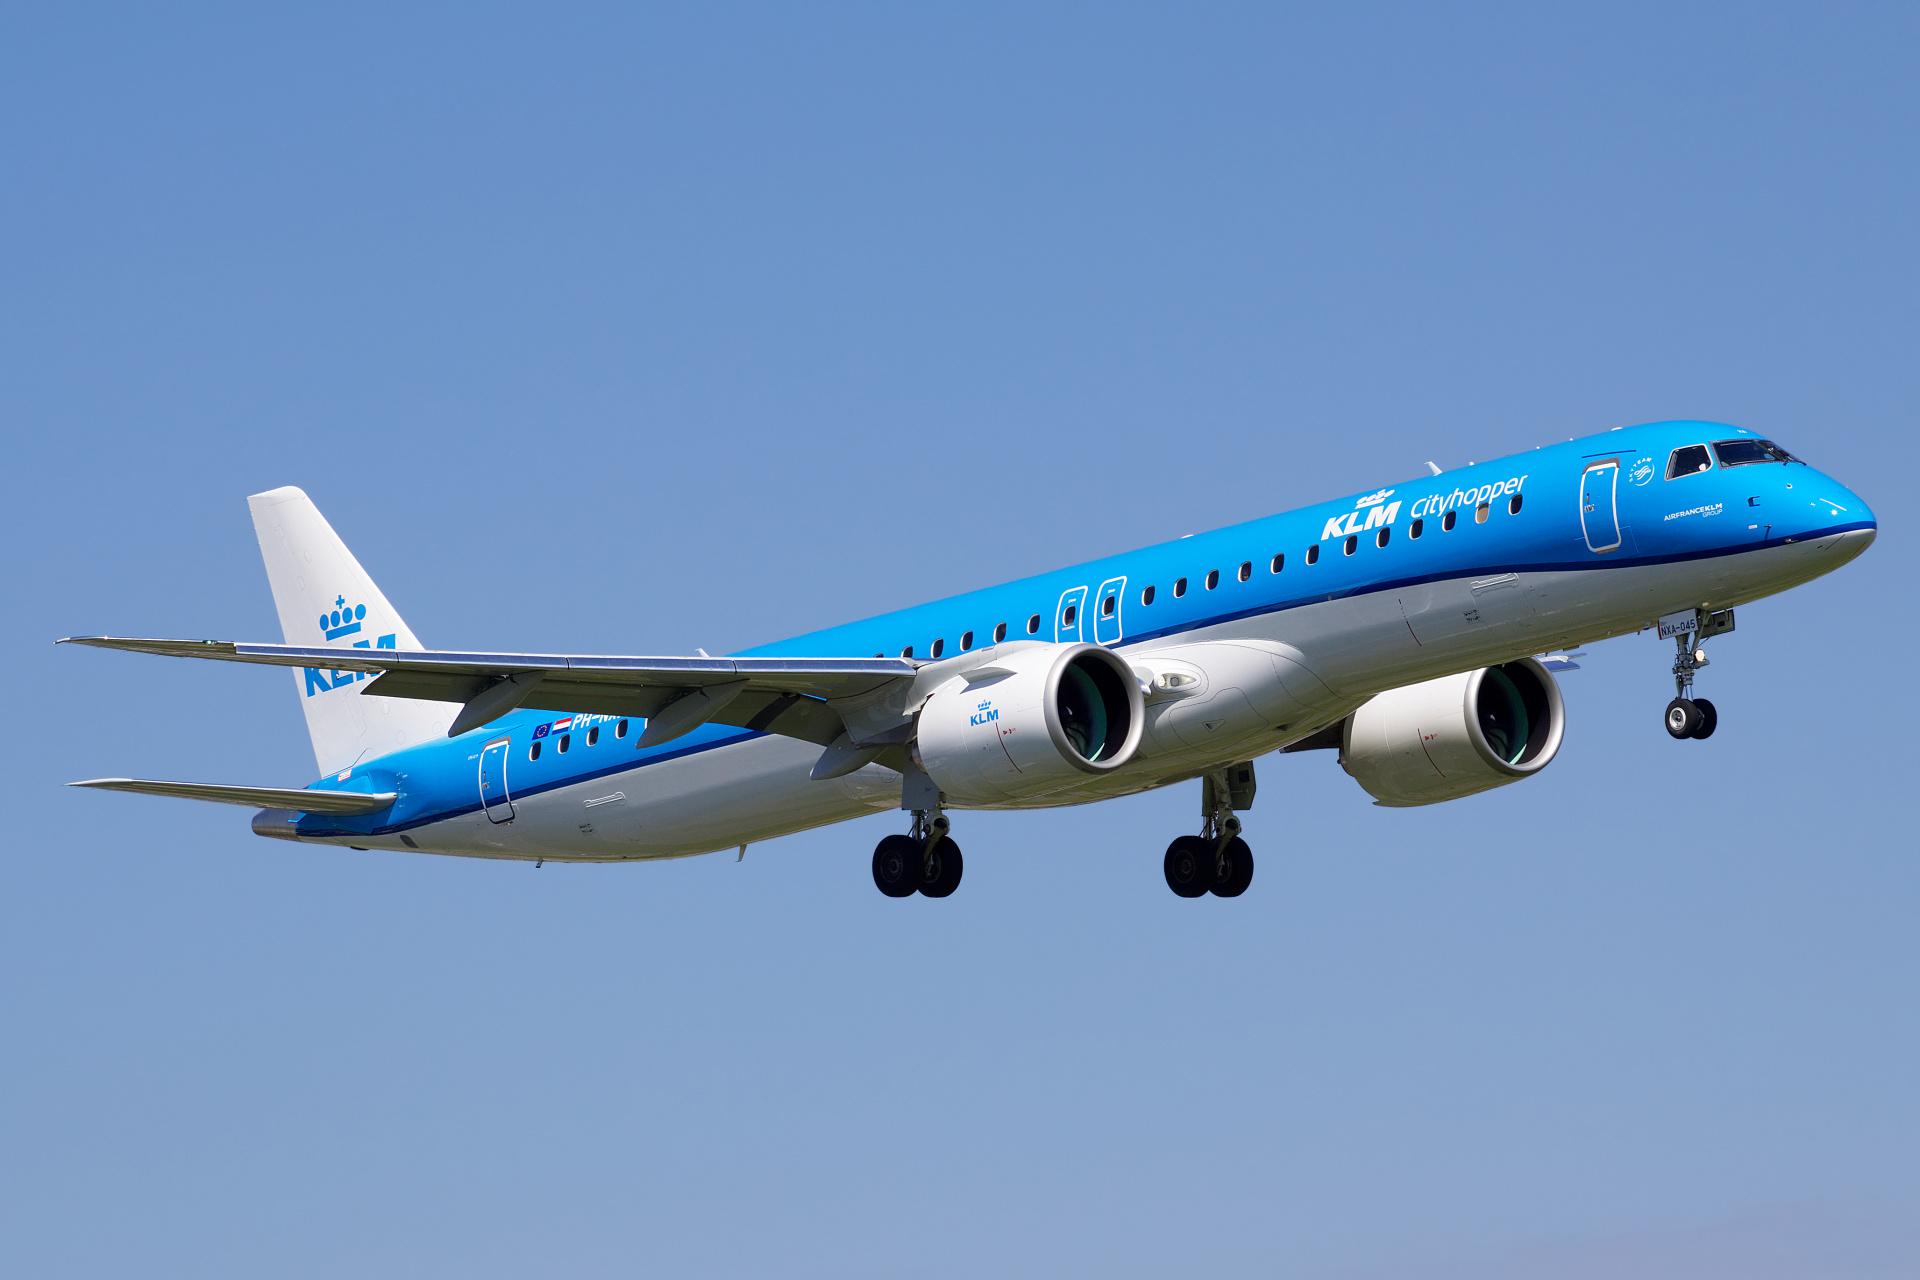 PH-NXA (Aircraft » EPWA Spotting » Embraer E195-E2 » KLM Cityhopper)